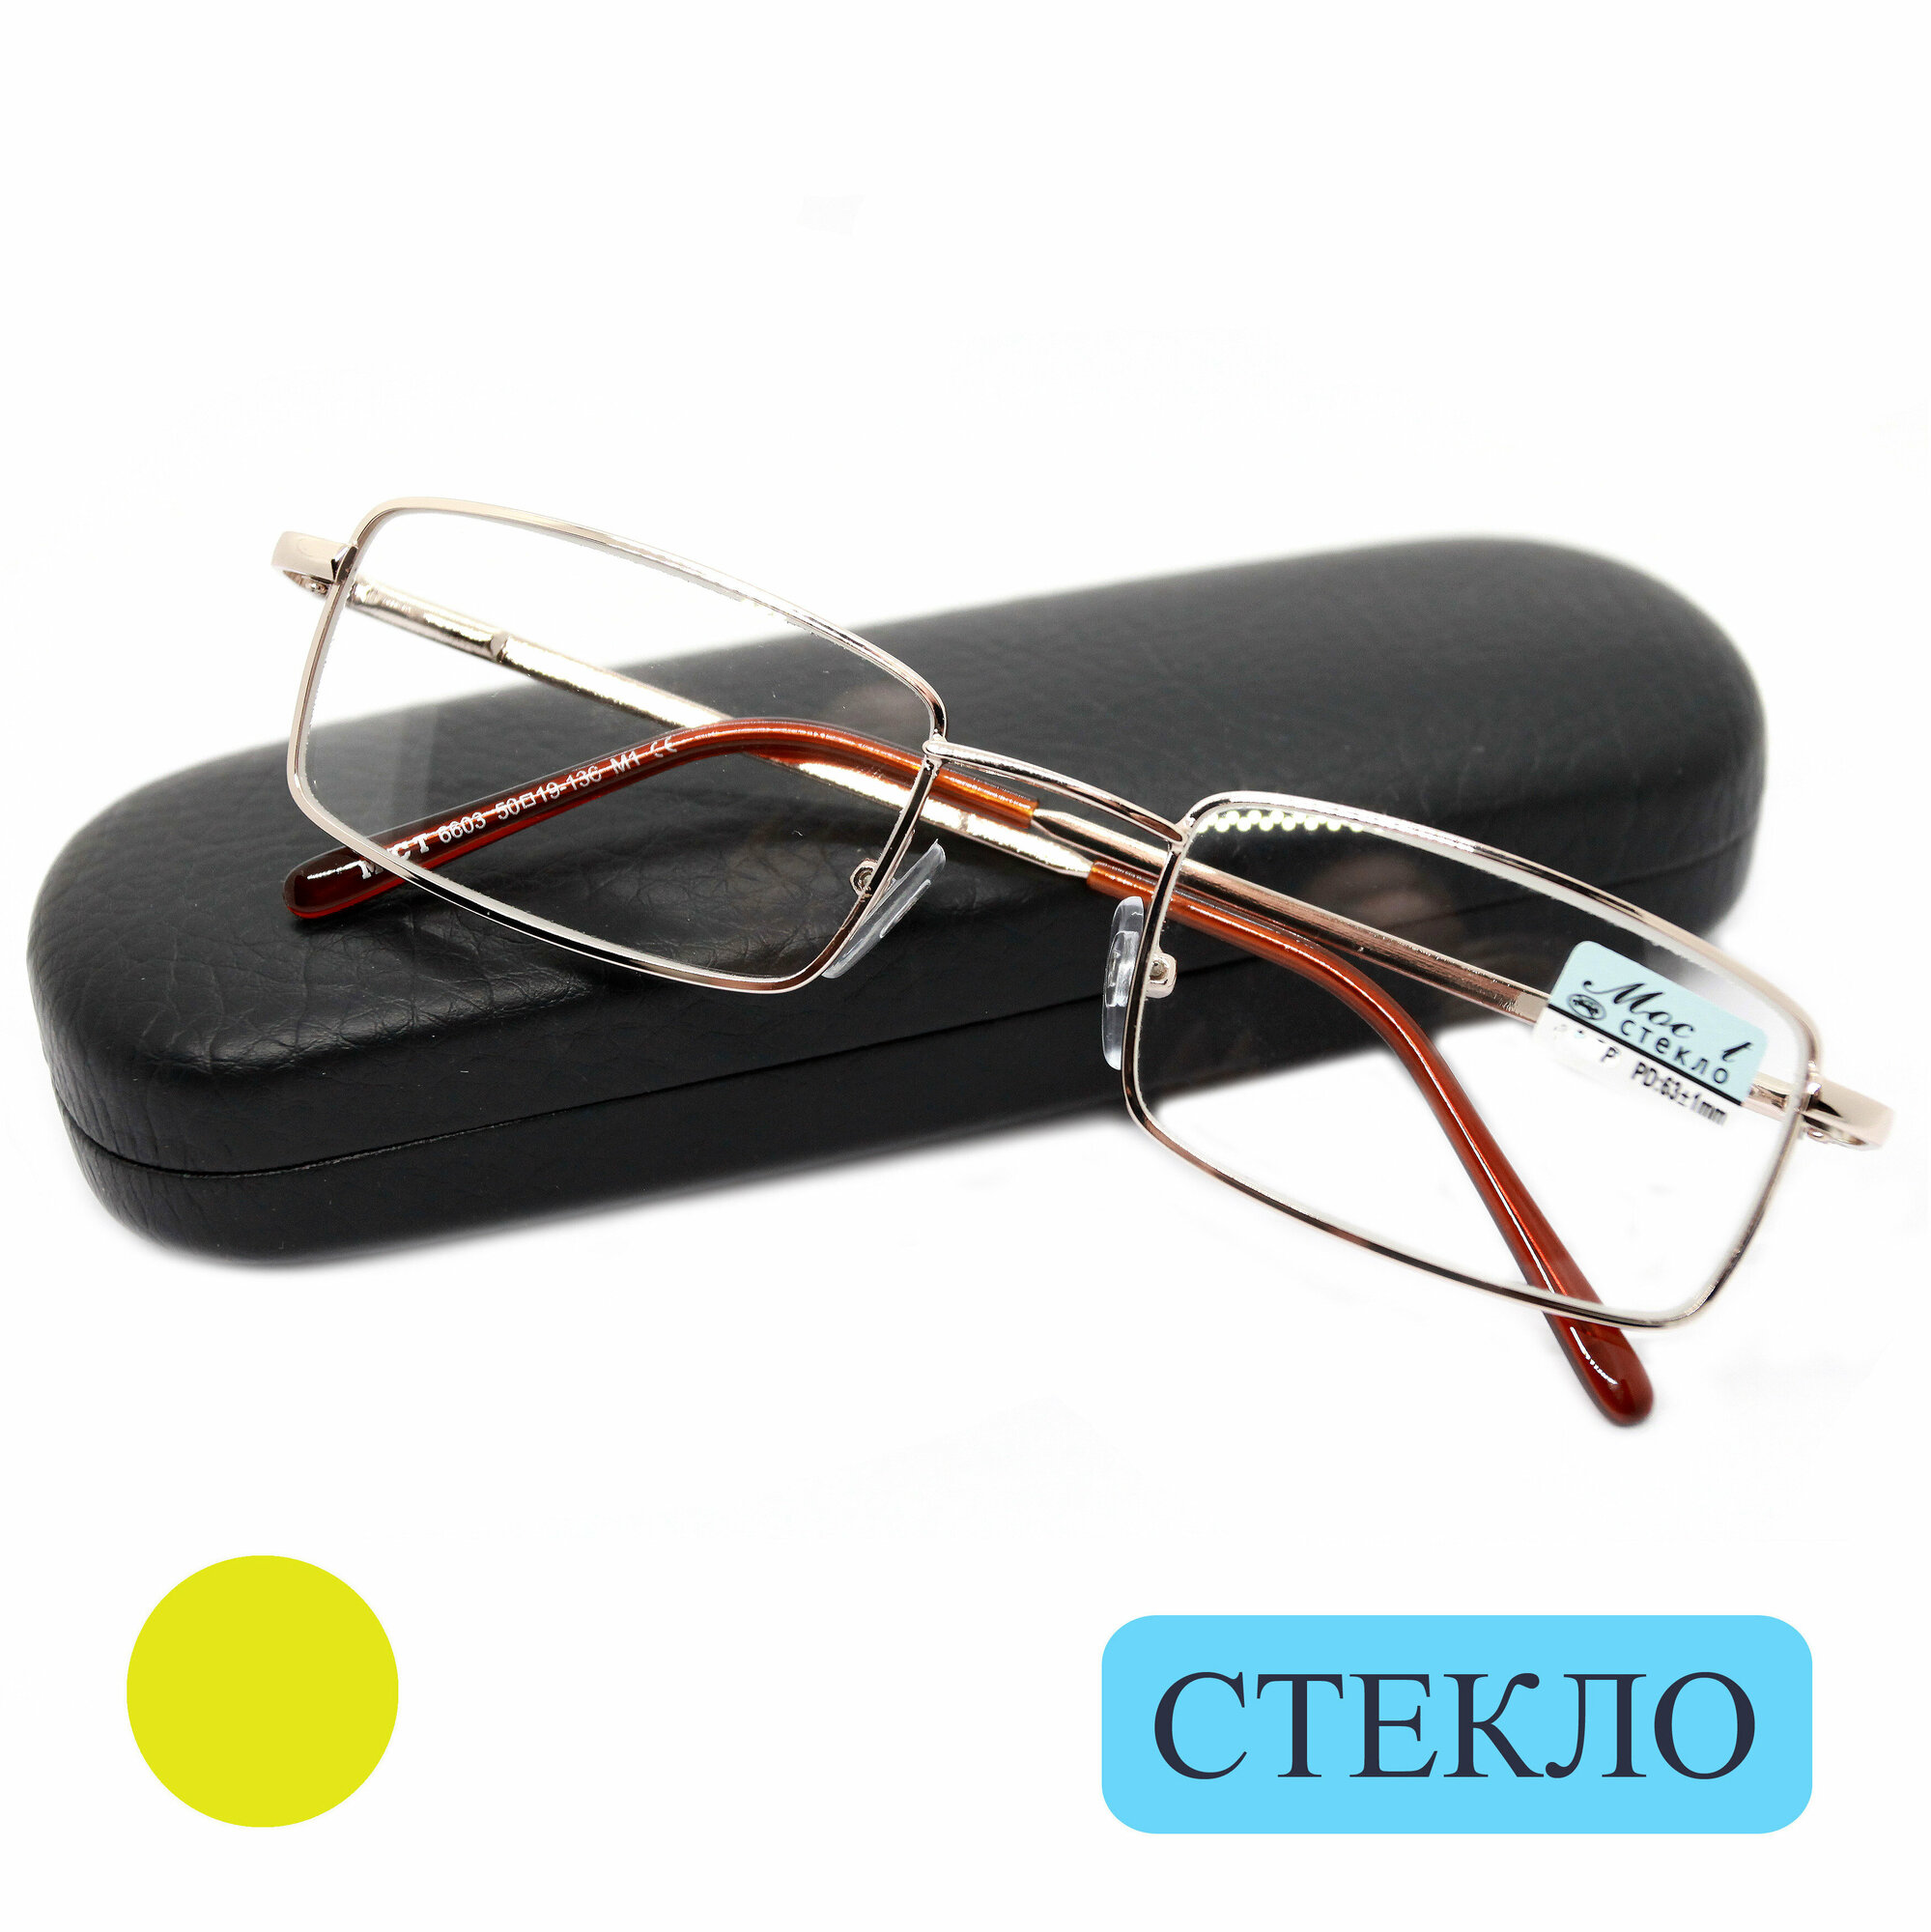 Готовые очки стекло для дали (-1.75) с футляром, мост 6603 M1, линза стекло, цвет золотой, РЦ 62-64